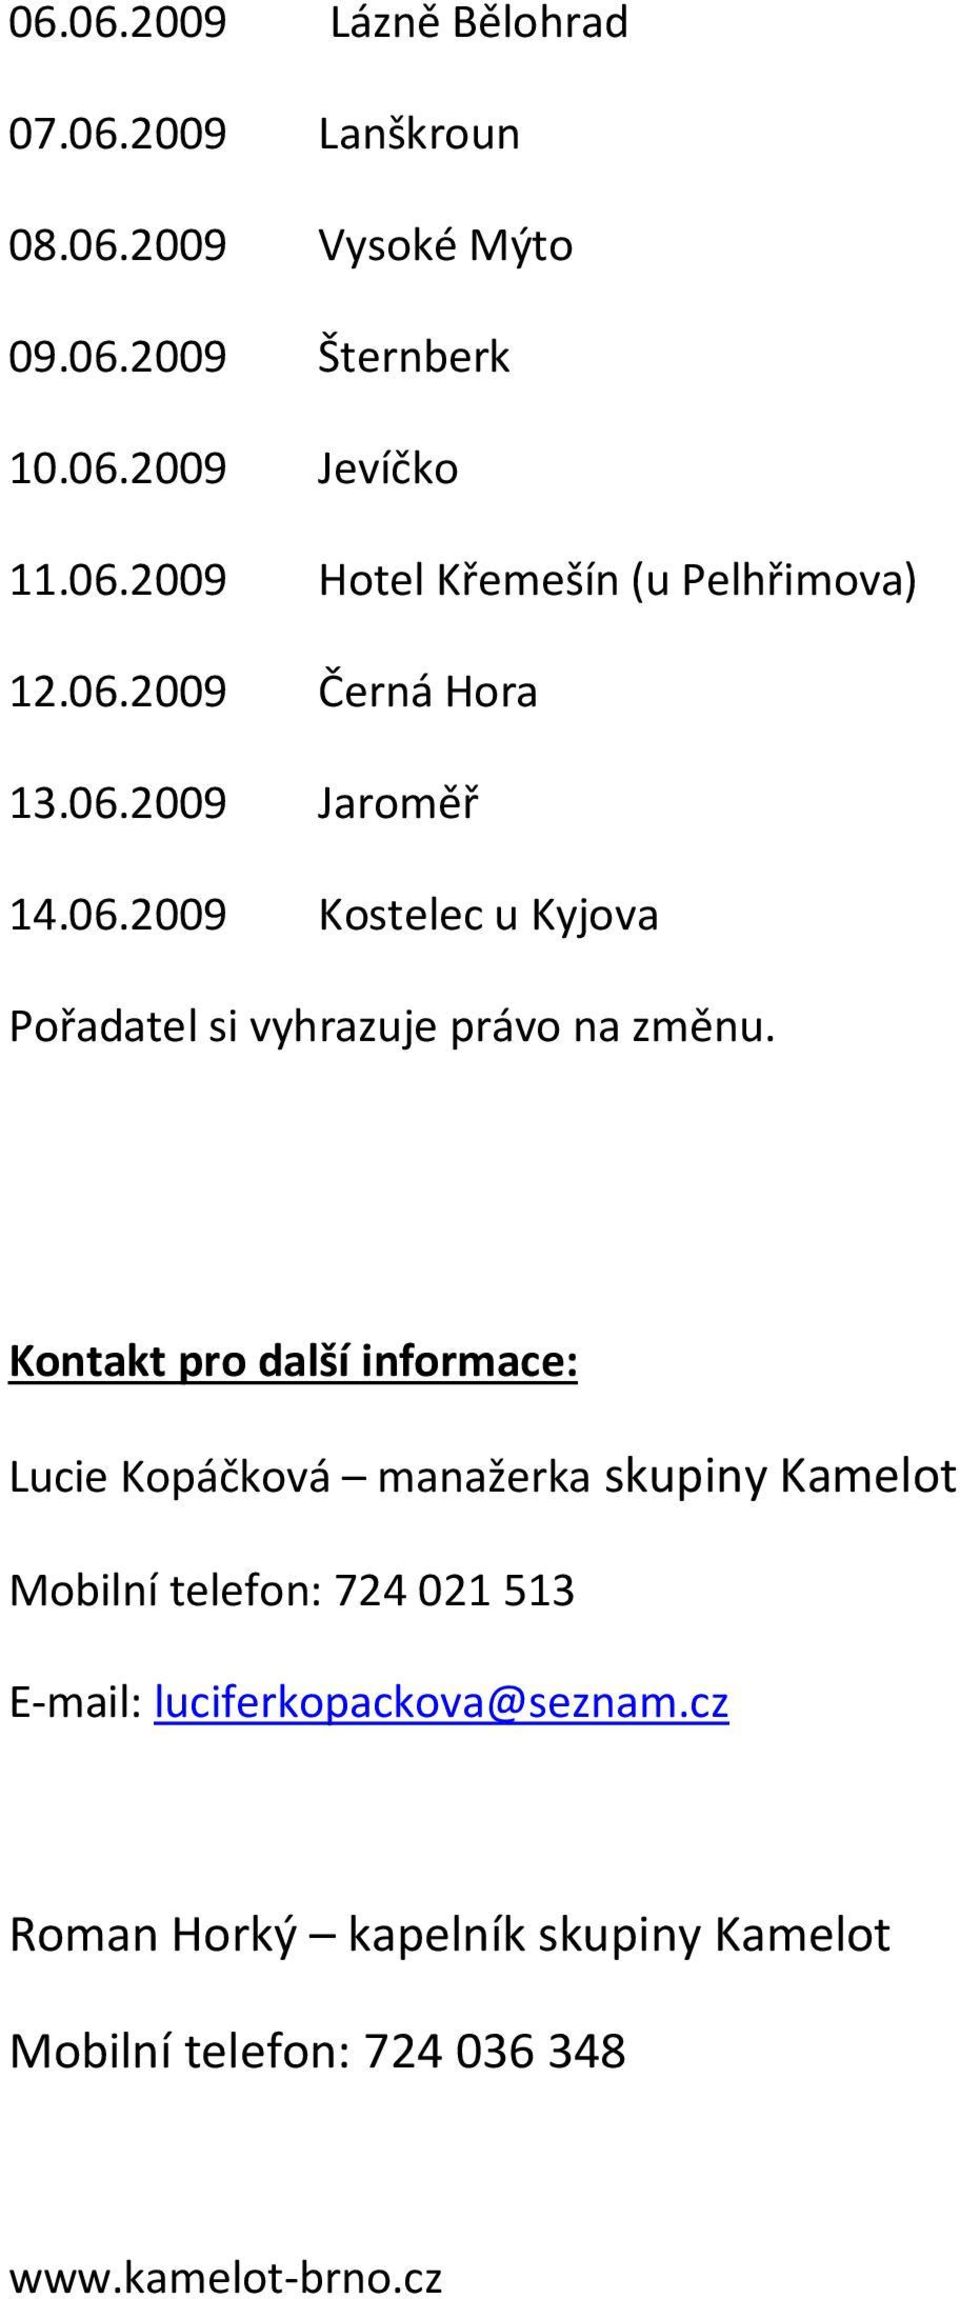 Kontakt pro další informace: Lucie Kopáčková manažerka skupiny Kamelot Mobilní telefon: 724021513 E-mail: